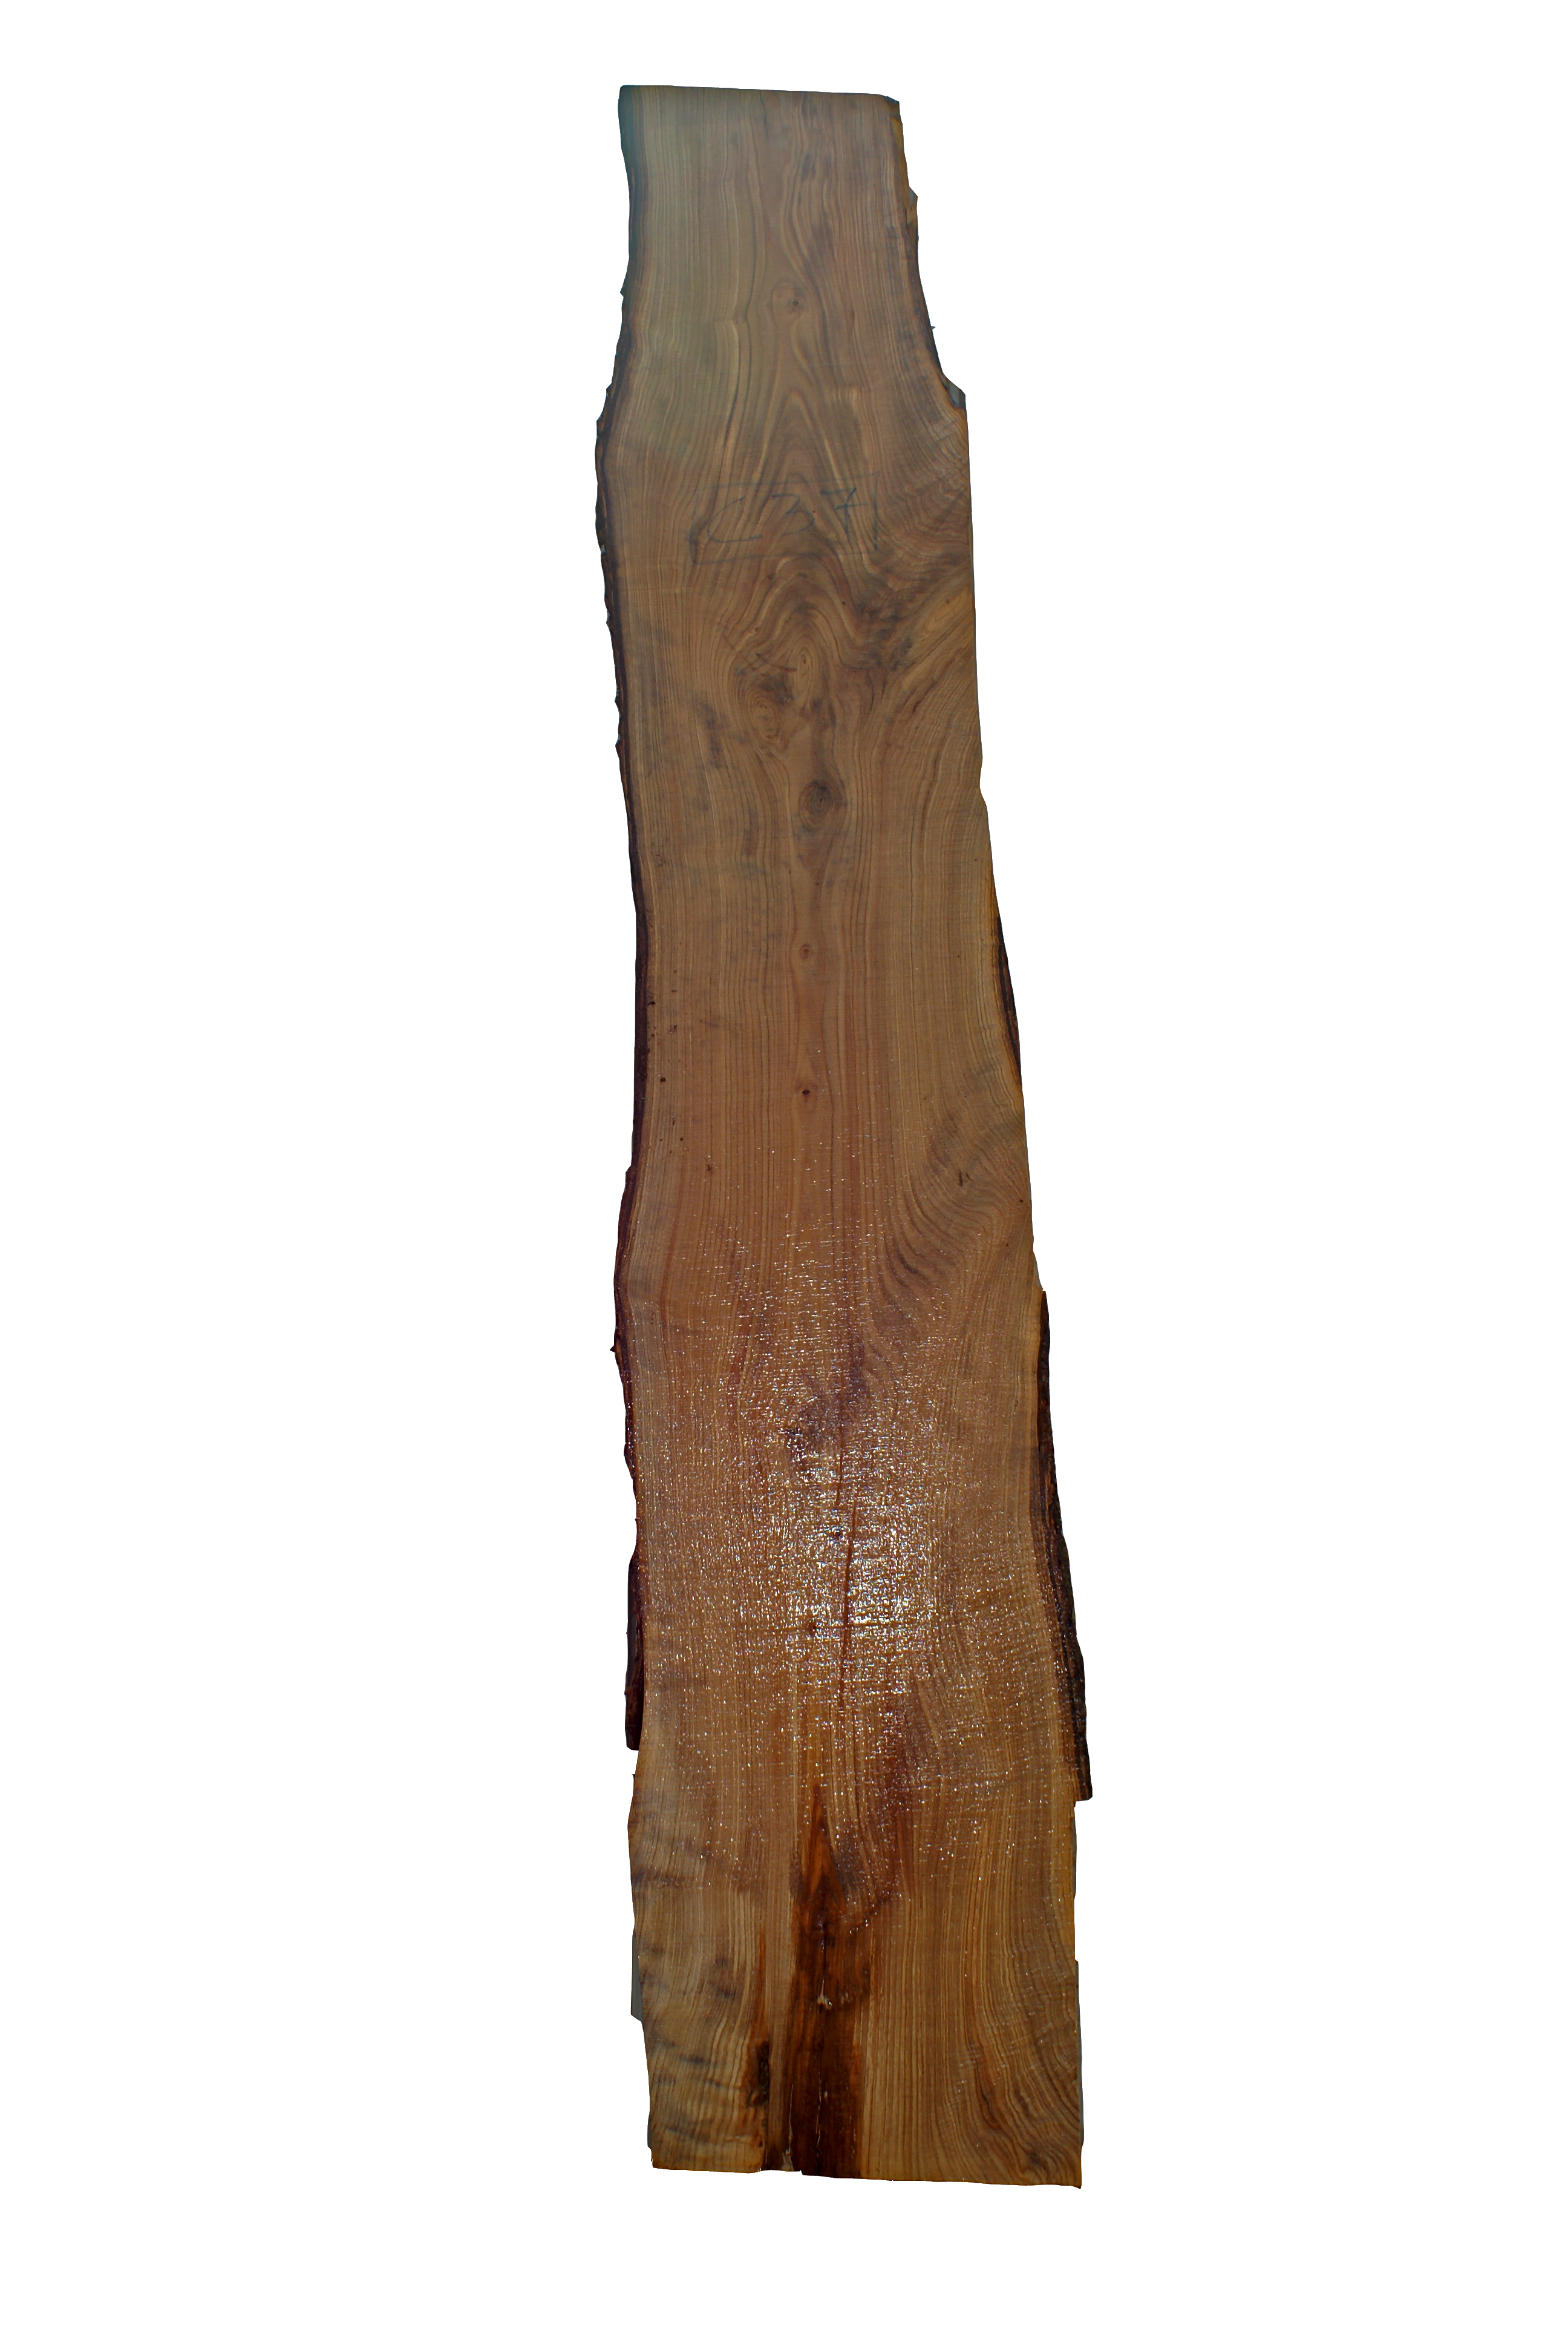 Tavola in legno di castagno legname